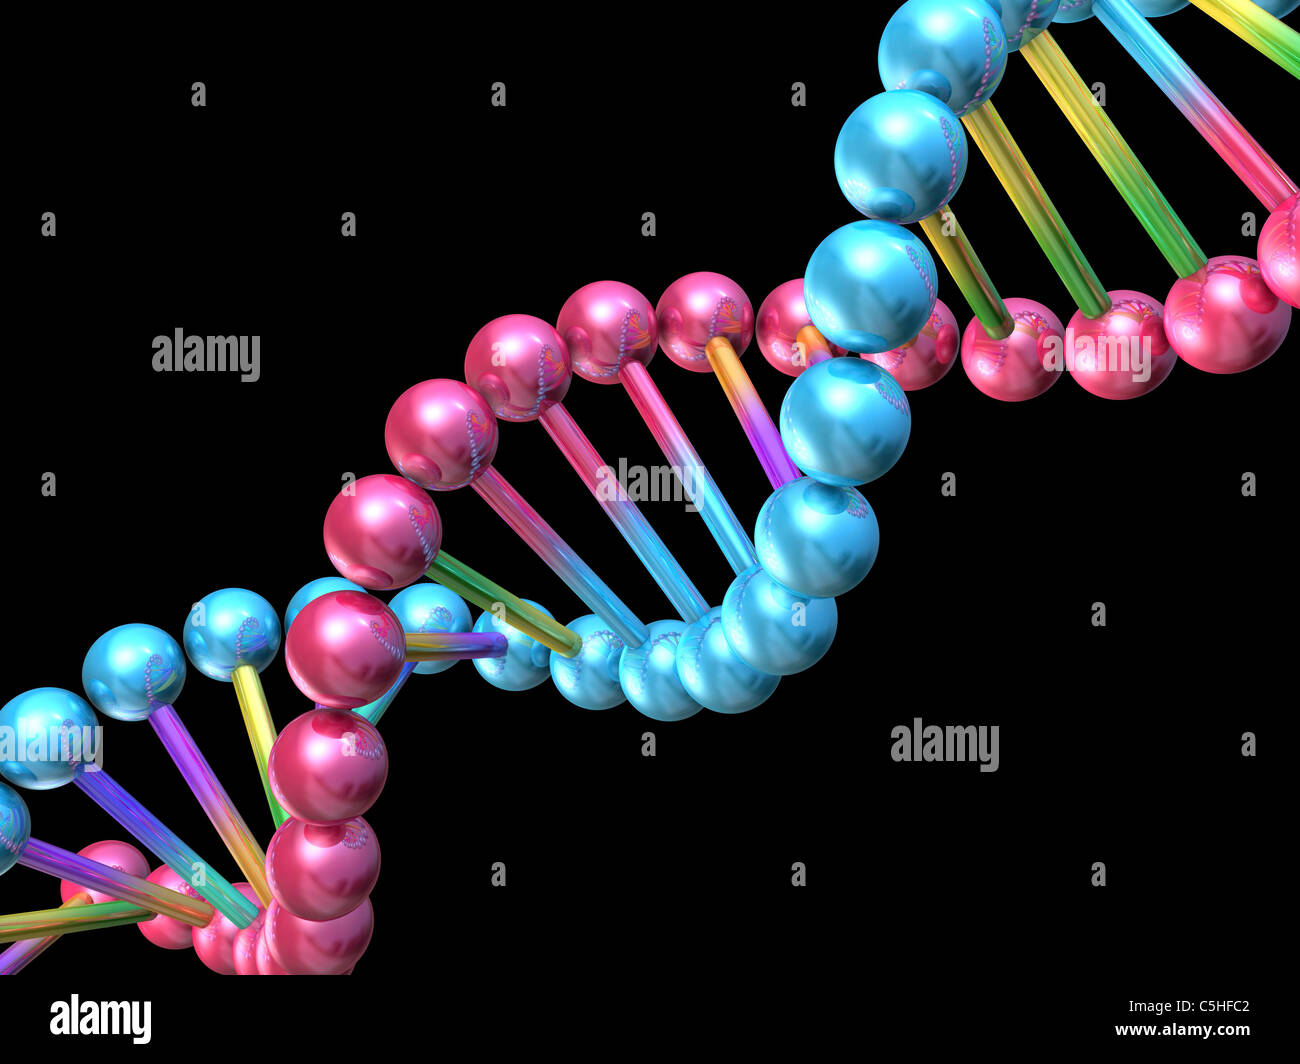 DNA molecule, computer artwork Stock Photo